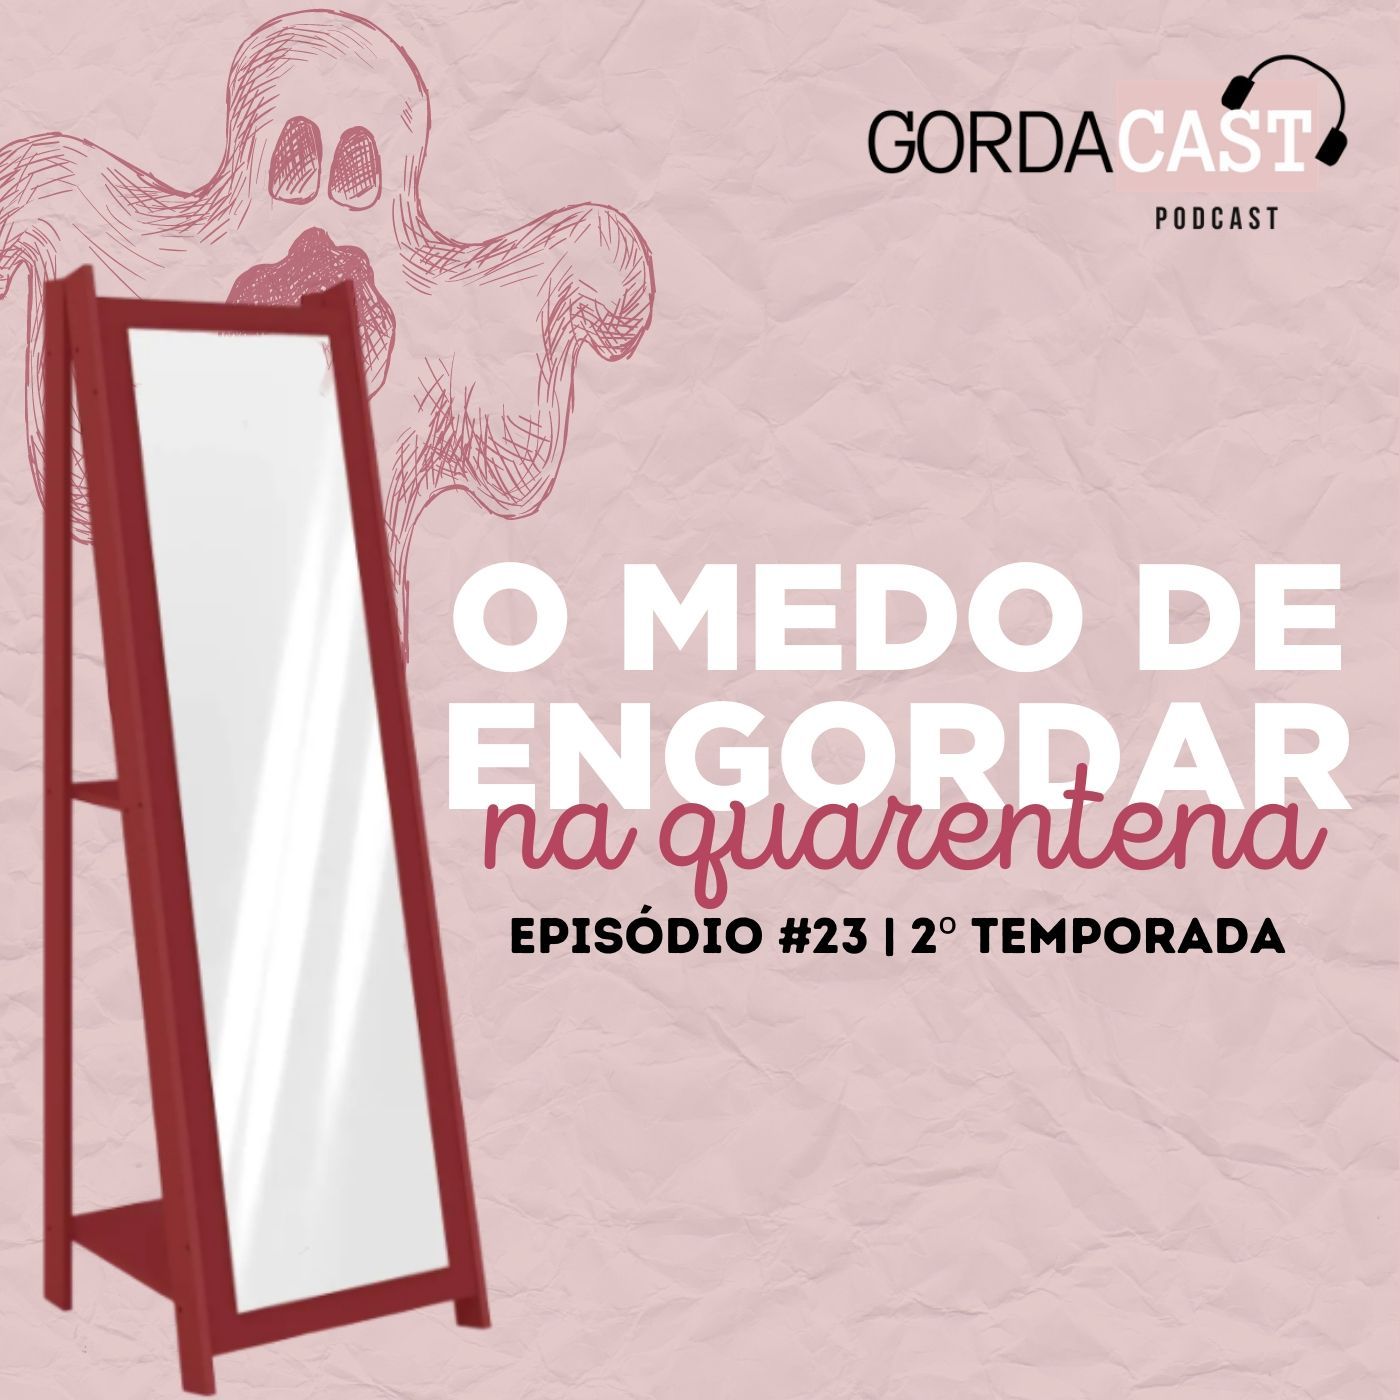 GordaCast #23 | O medo de engordar na quarentena com Gabriele Menezes